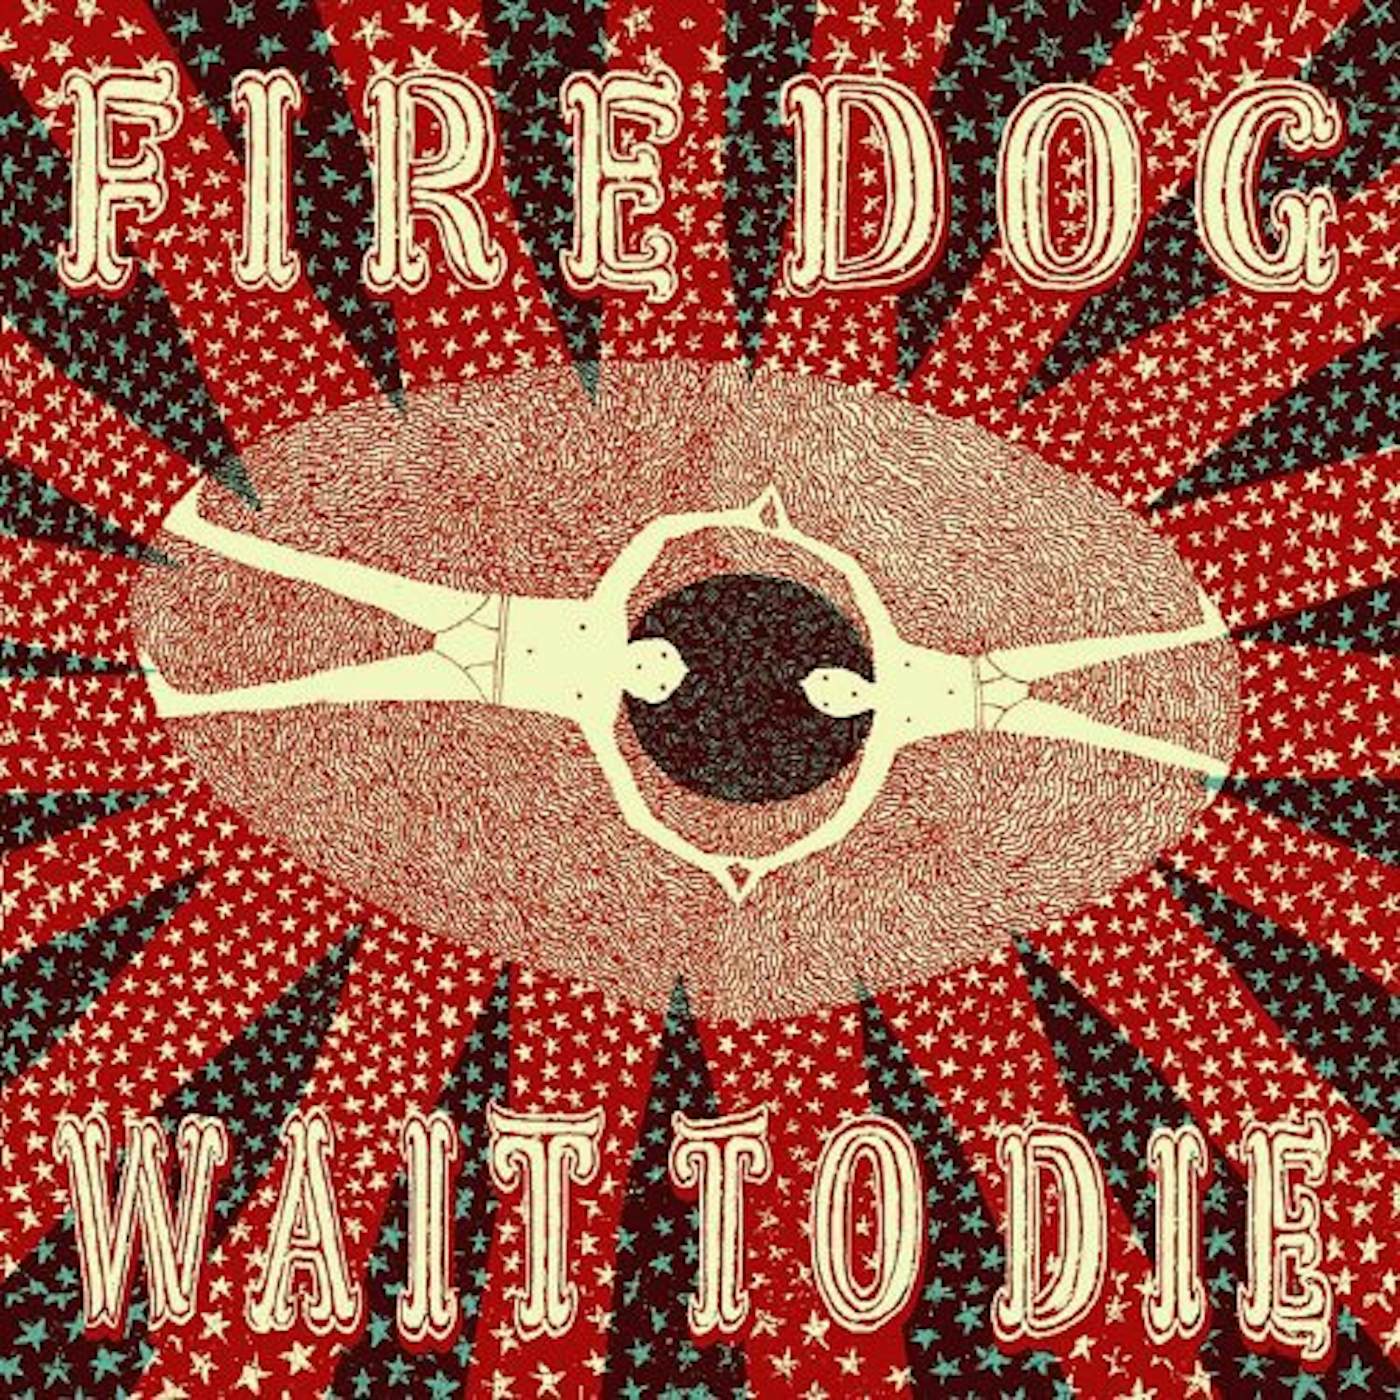 Fire Dog Wait To Die Vinyl Record